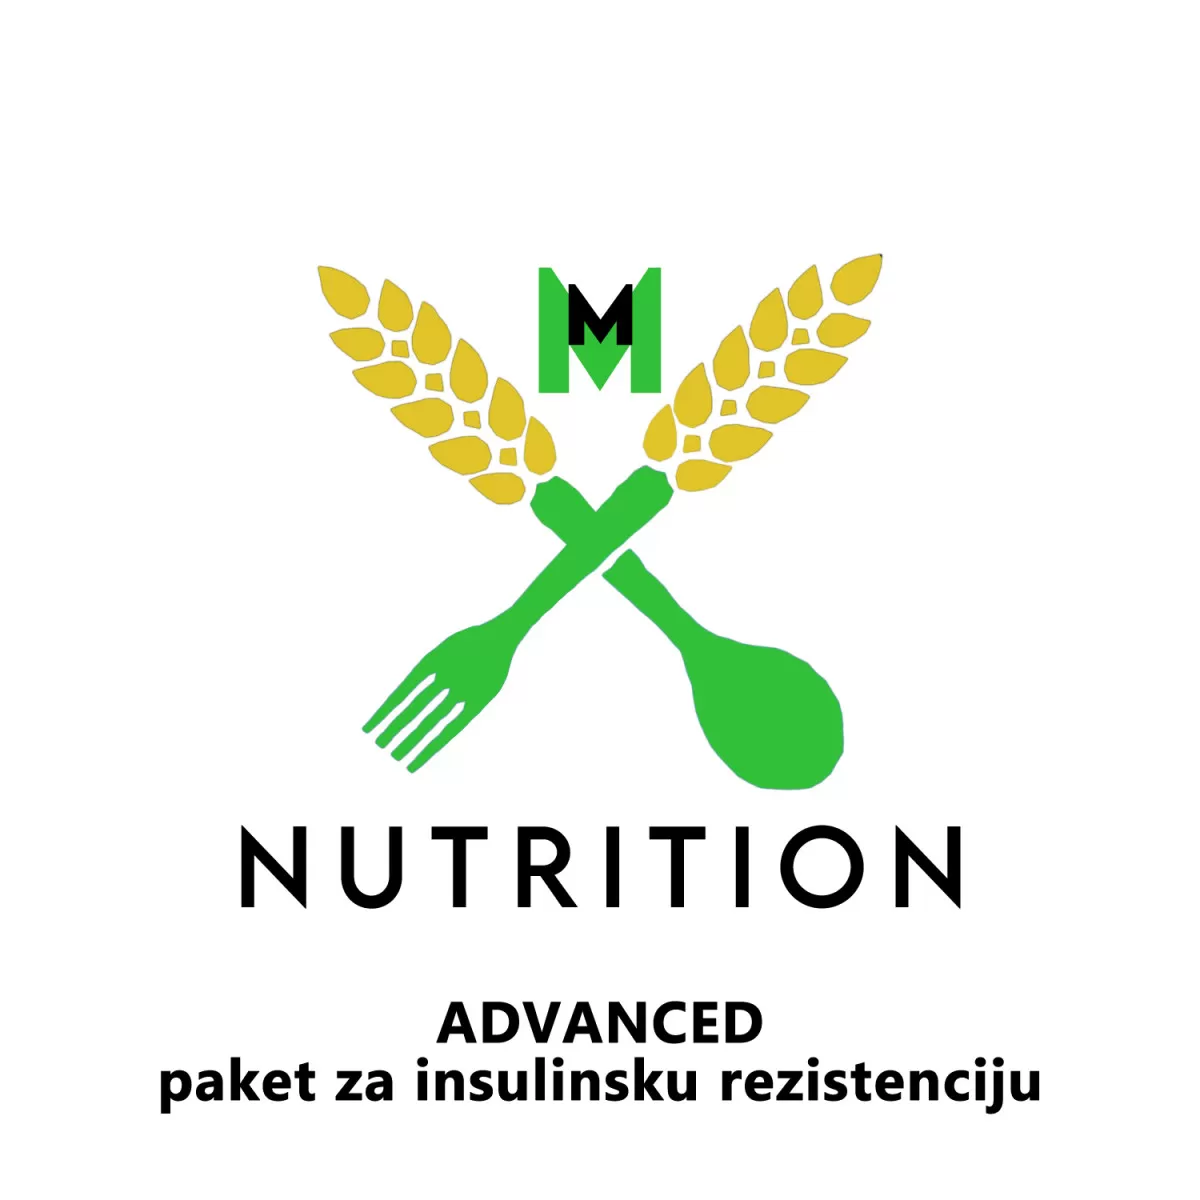 ADVANCED paket za insulinsku rezistenciju - konsultacije 